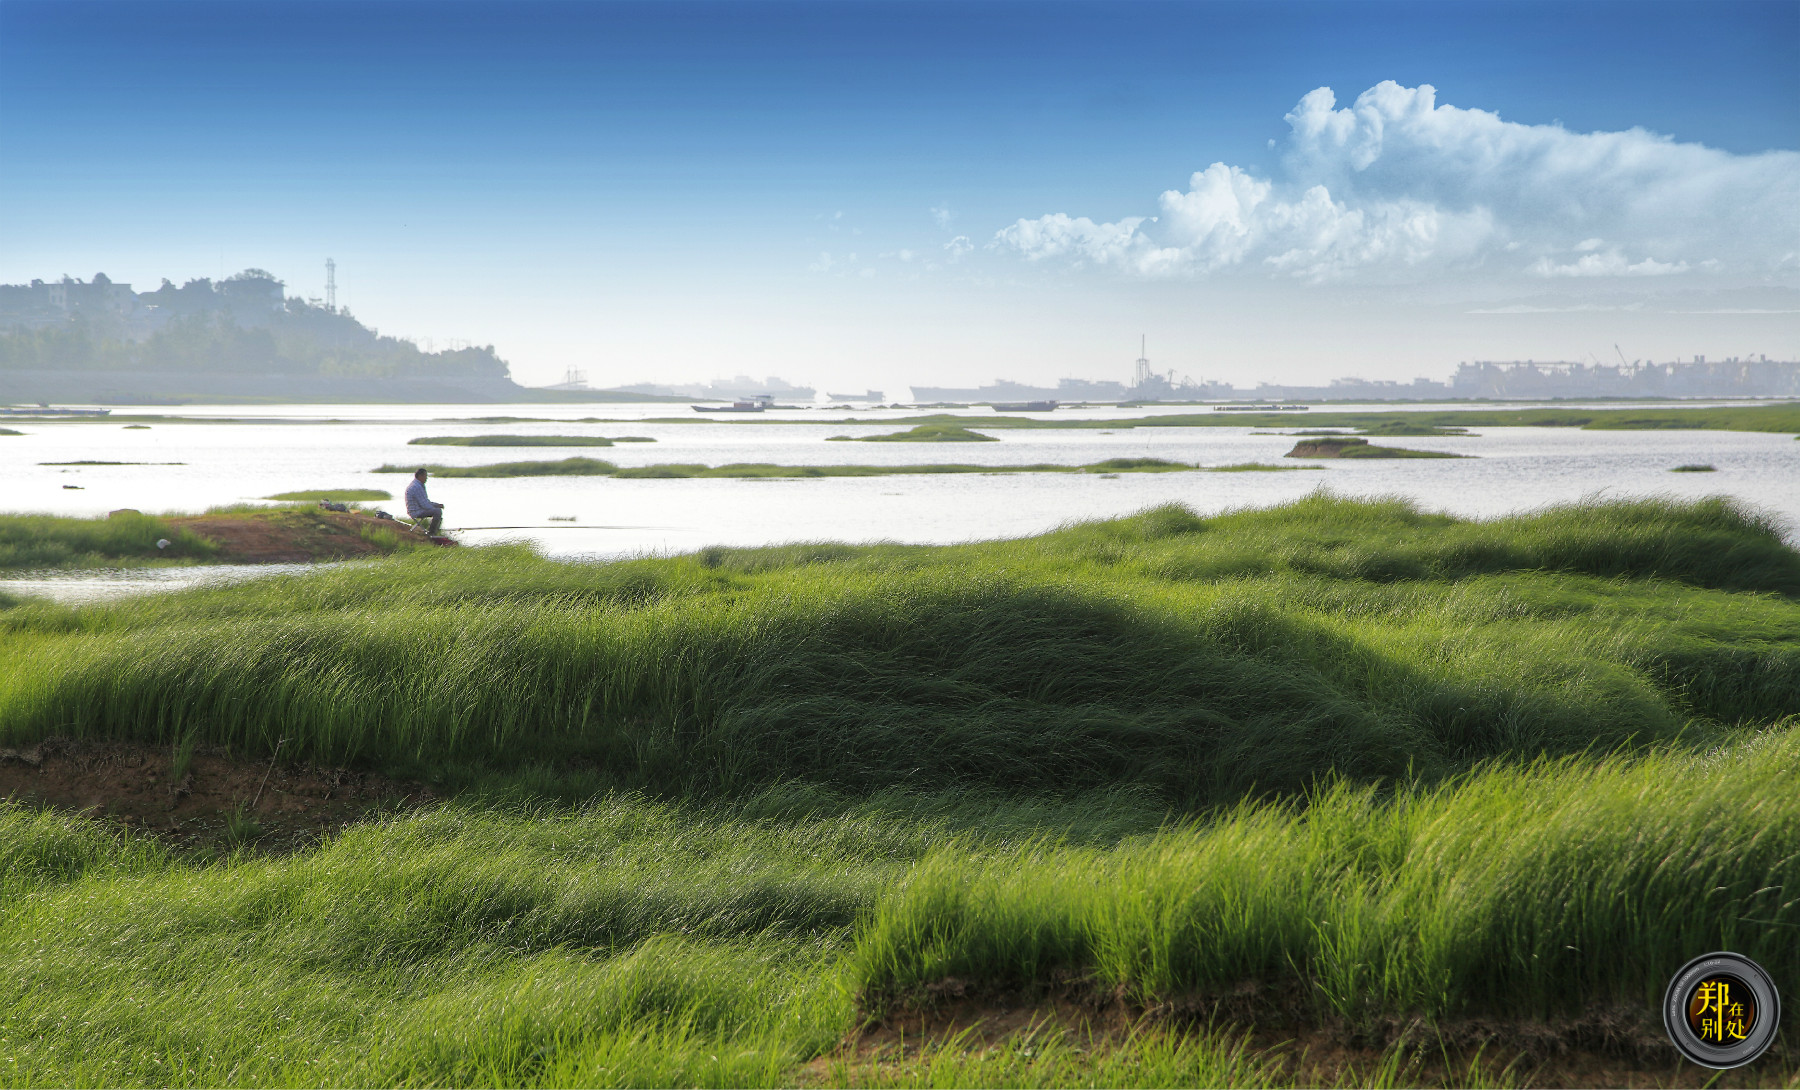 鄱阳湖水位下降,风景迷人也让人心忧